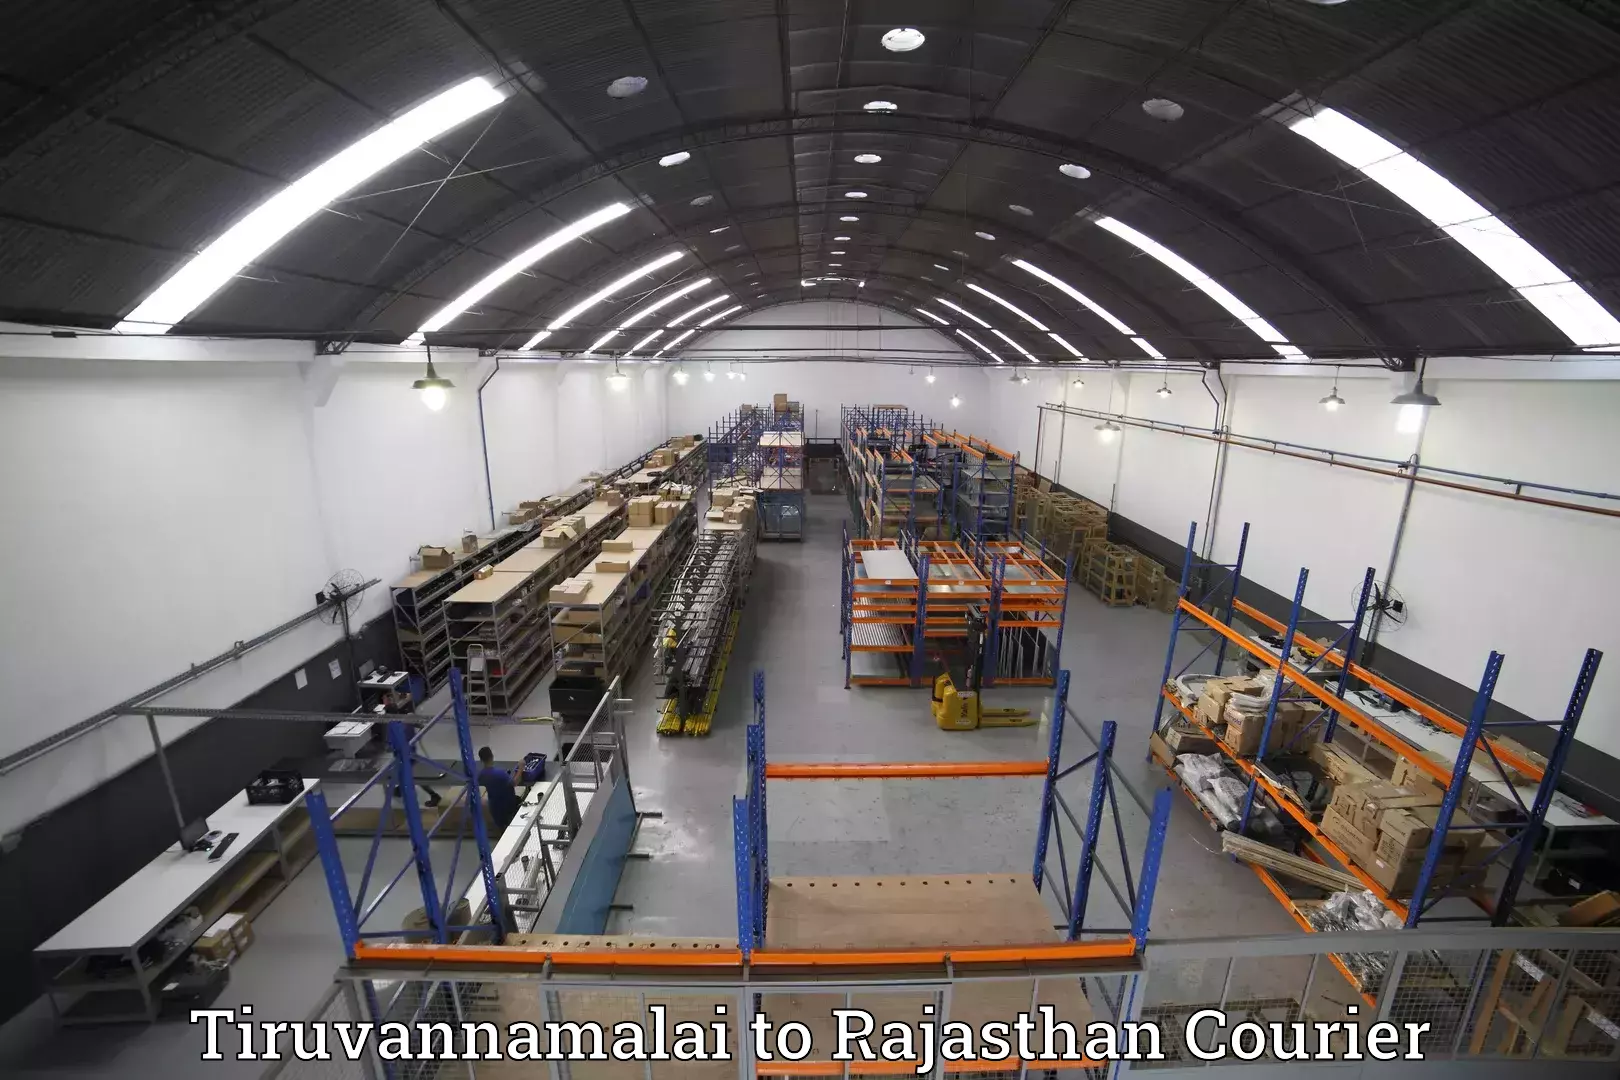 Baggage transport network Tiruvannamalai to Rajasthan